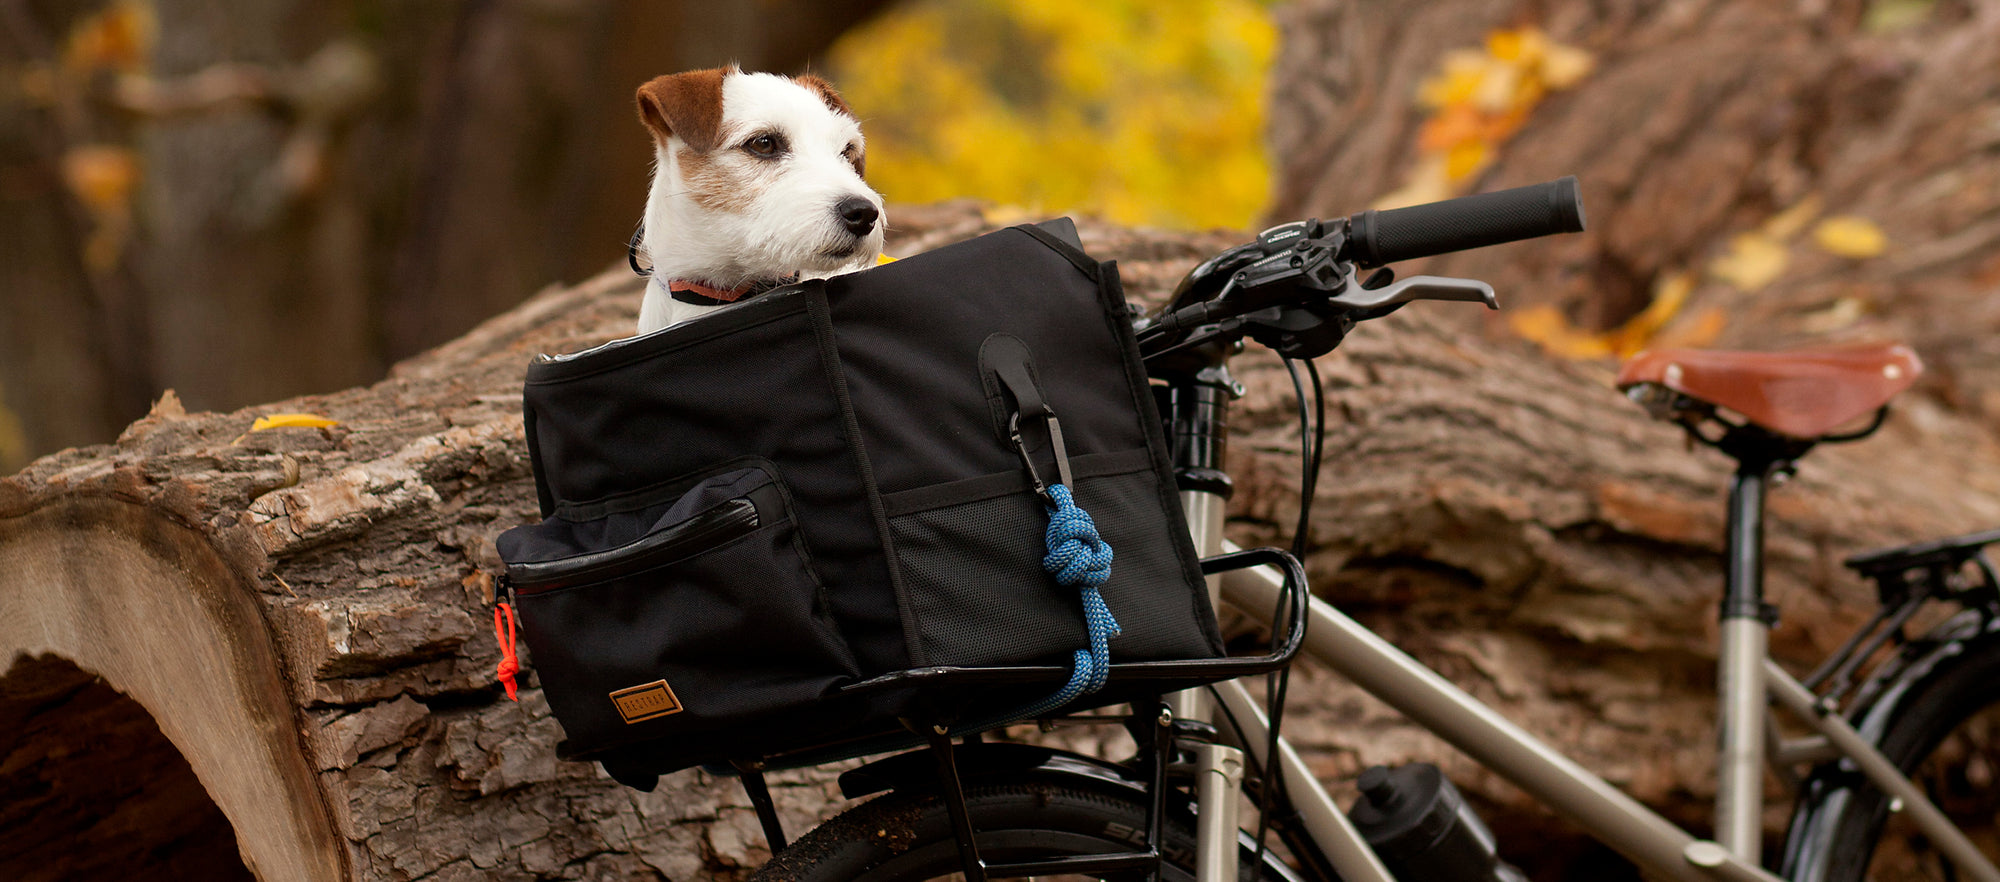 Bicycle Pannier Bags Waterproof | Rhinowalk Bicycle Bag | Bike Bags Bicycle  Bag - Bike - Aliexpress